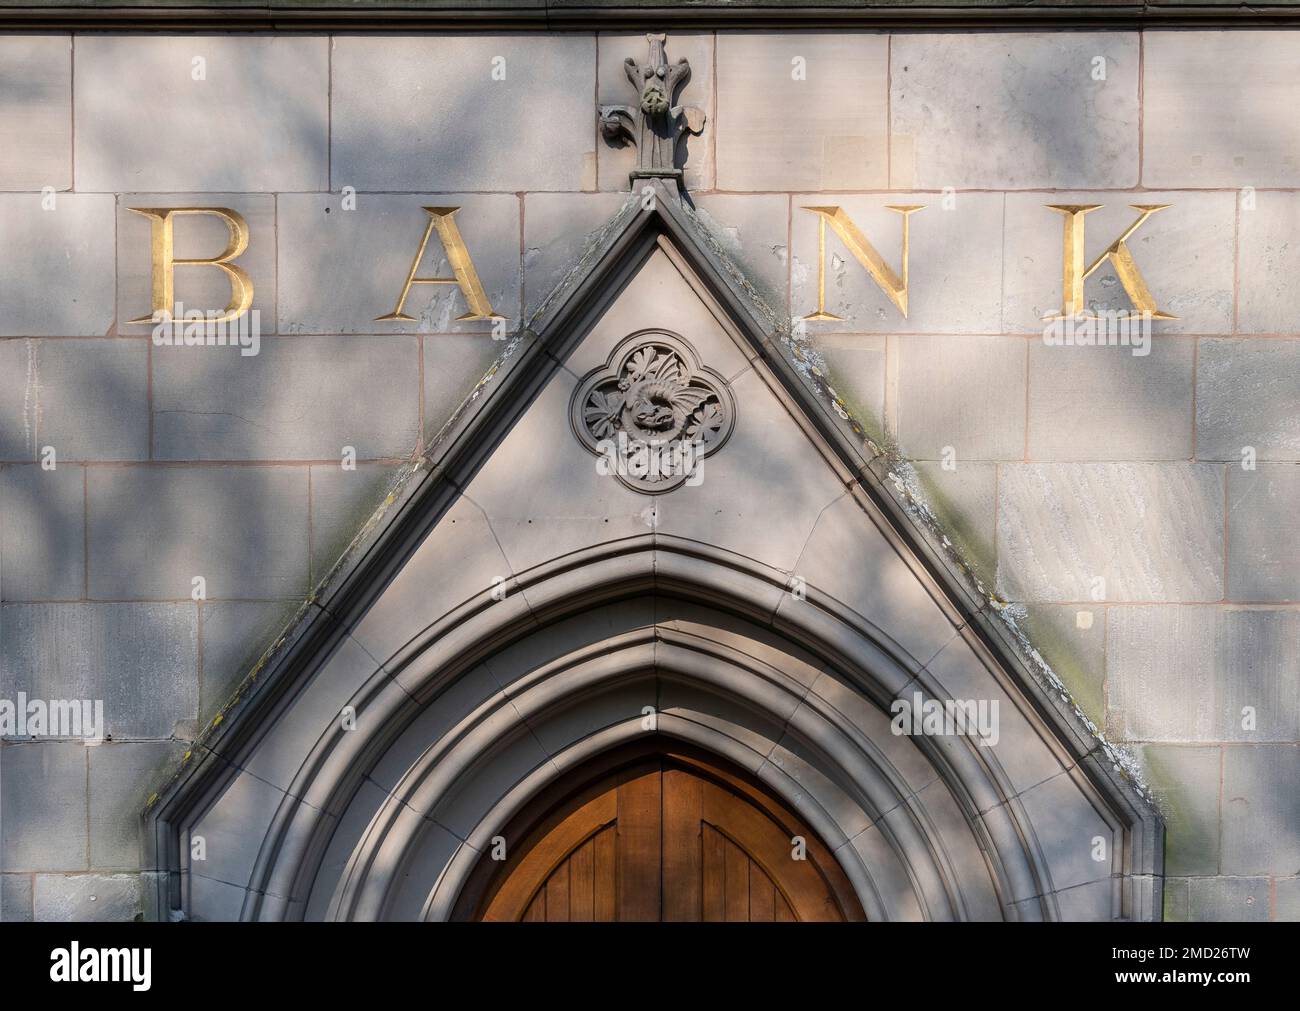 Détail extérieur de style gothique, Barclays Bank, Nantwich Town Centre, Nantwich, Cheshire, Angleterre, Royaume-Uni Banque D'Images